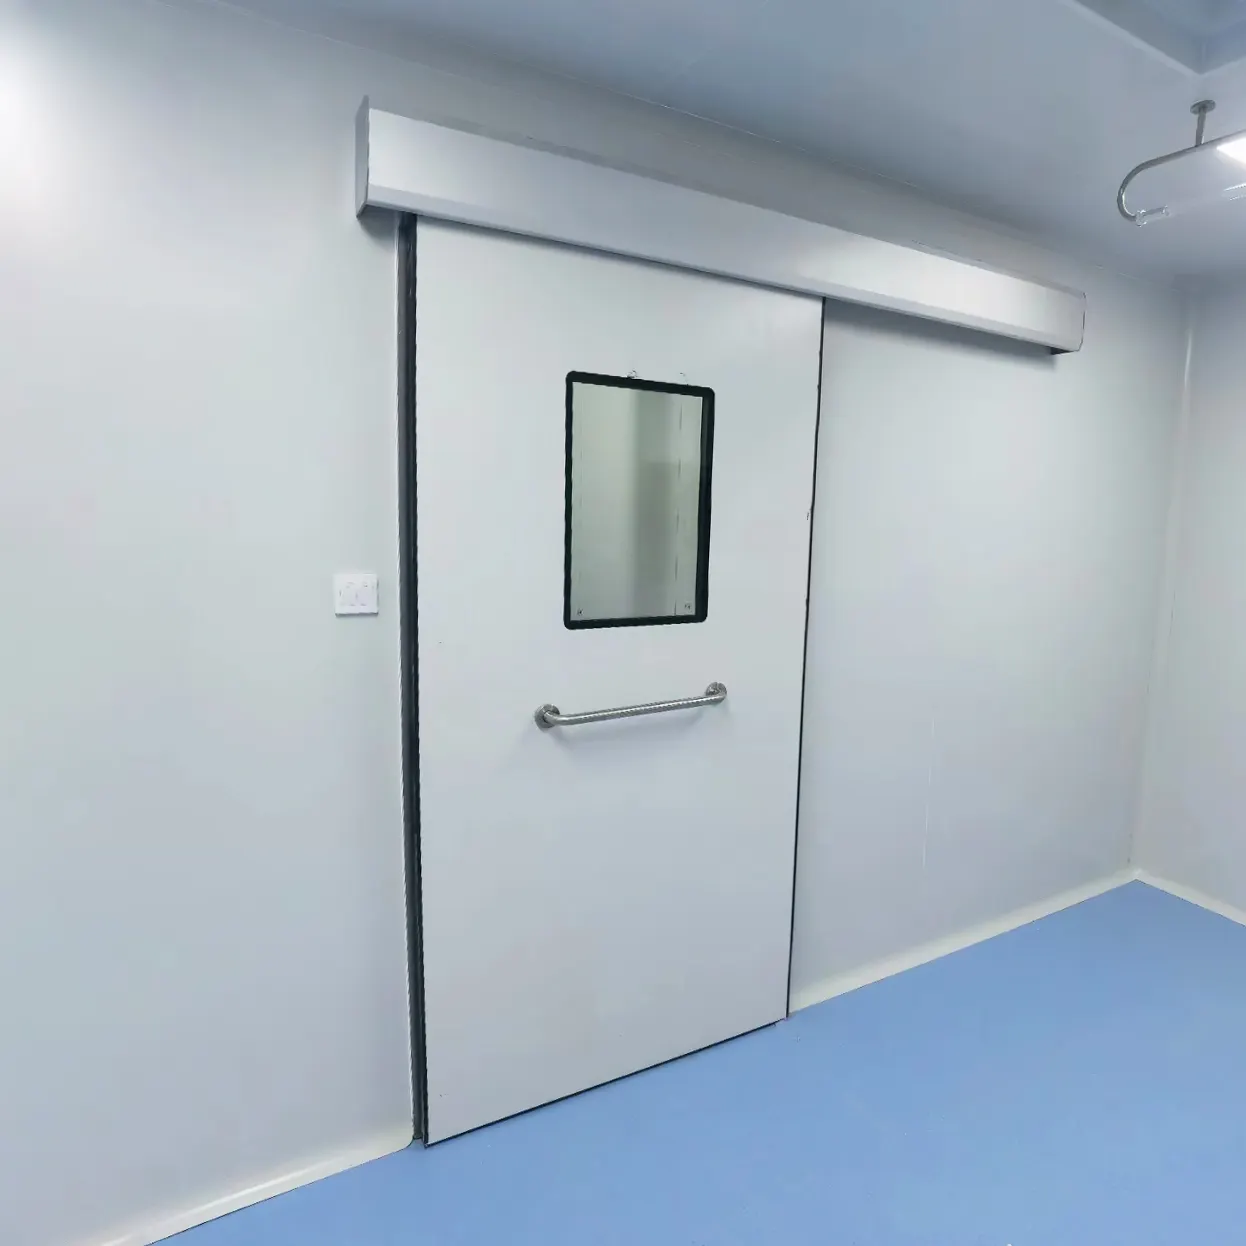 Gmp Honeycomb Cleanroom Sliding Door Airkey Door Cleanroom Door For Hospital Lab